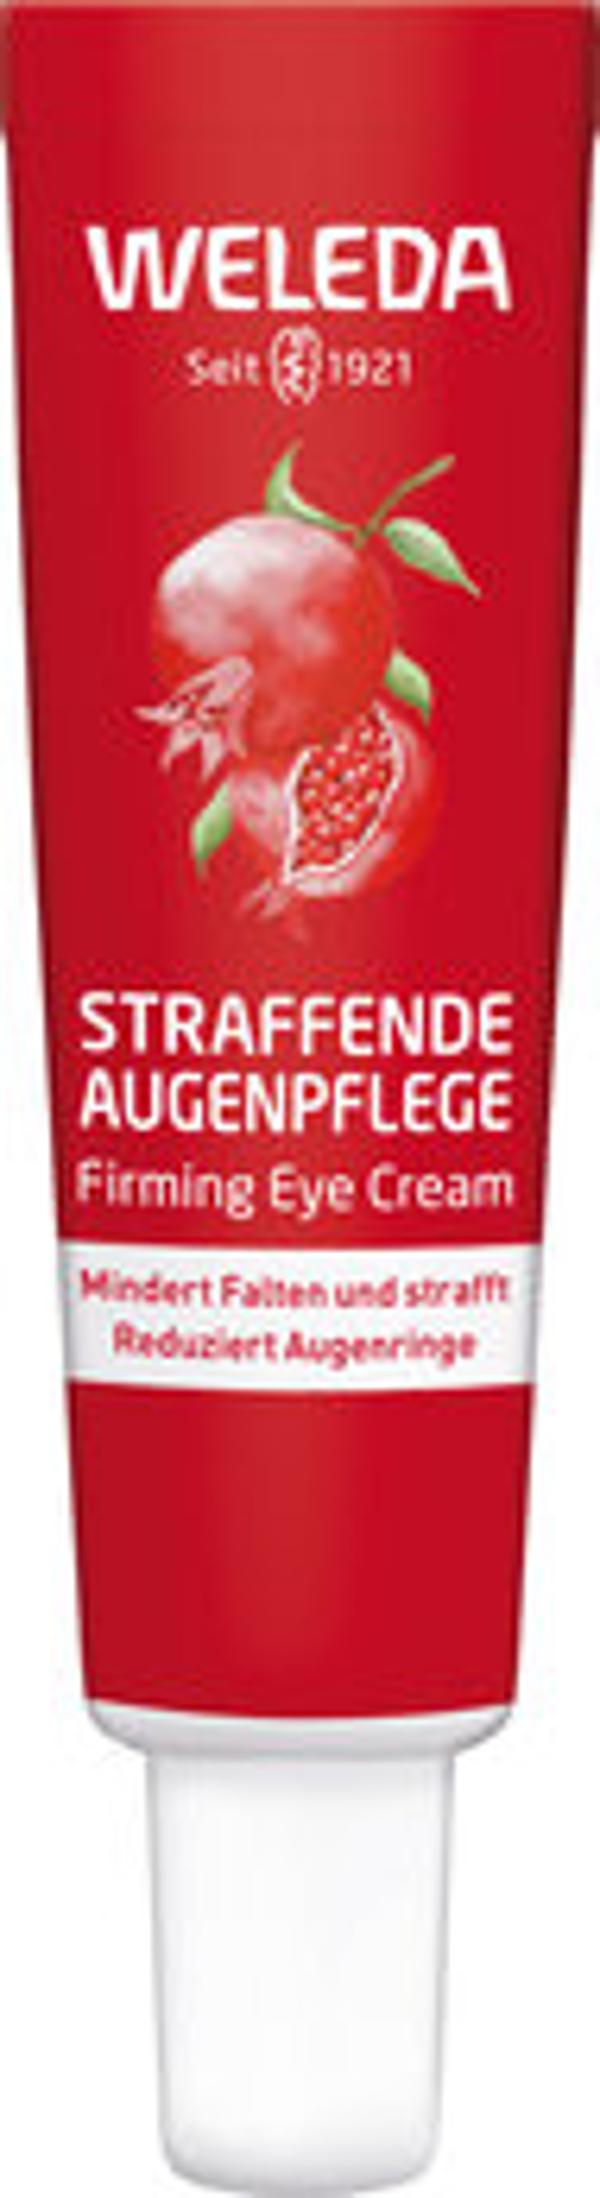 Produktfoto zu Straffende Augenpflege Granatapfel u Maca Peptide